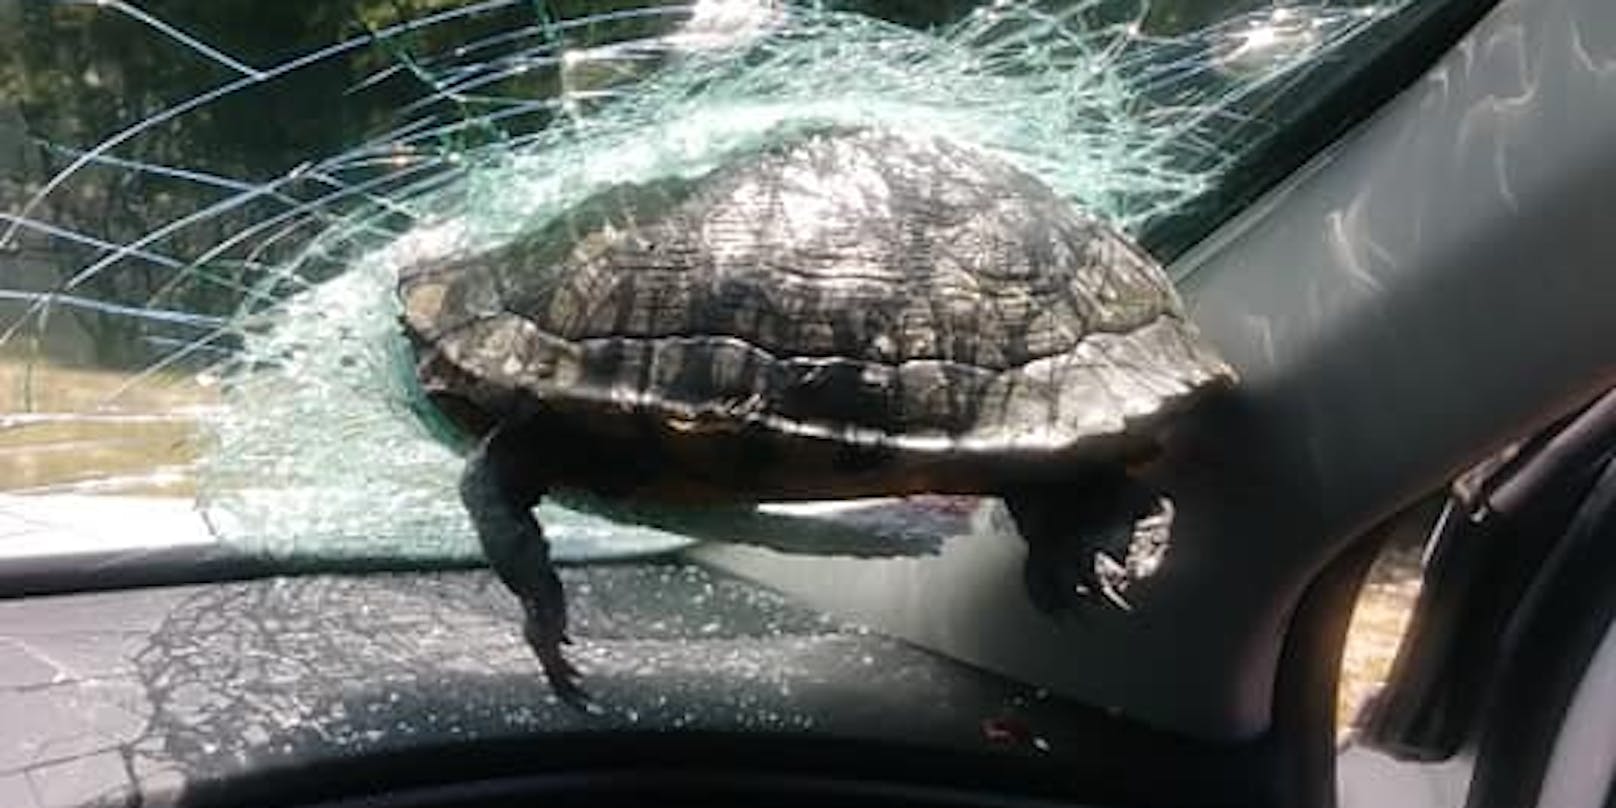 Die Schildkröte überlebte den bizarren Crash leider nicht